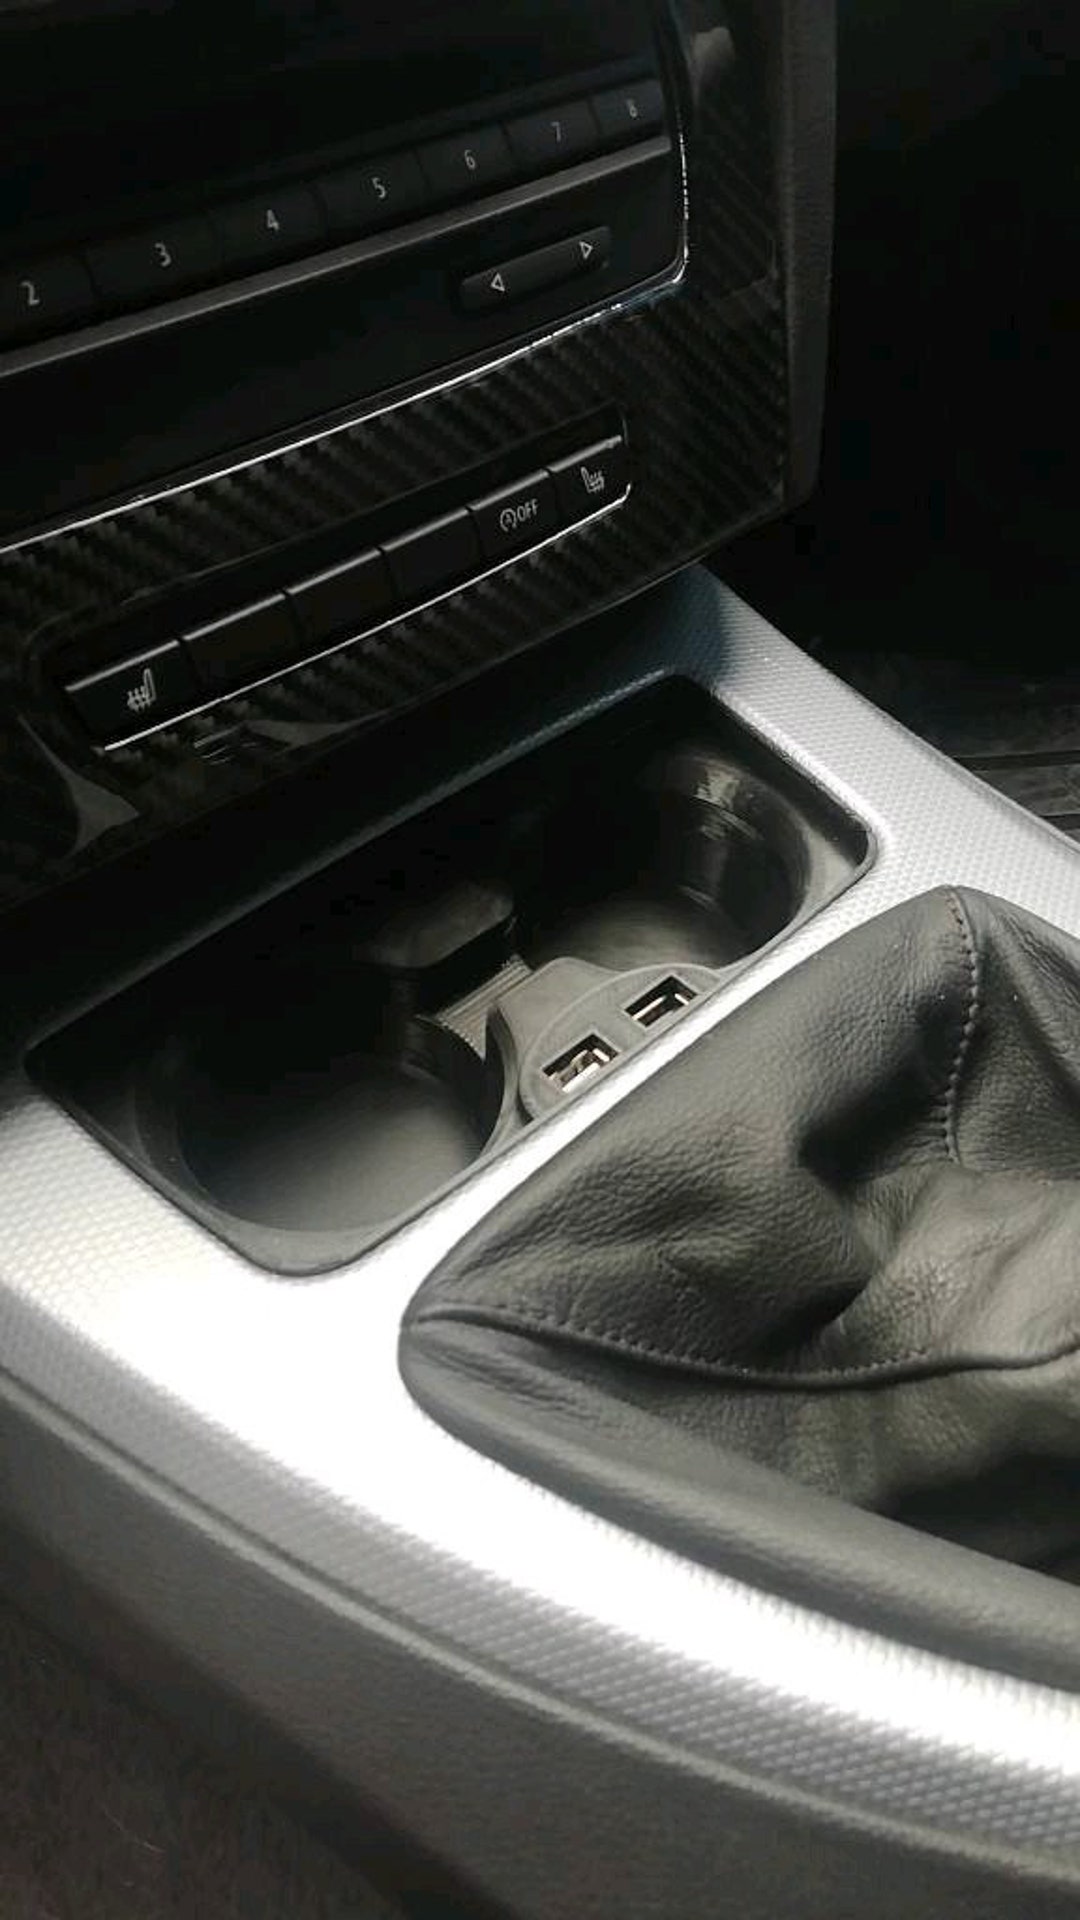 Chargeur USB BMW E90 avec porte-gobelet installation facile Compartiment de  rangement de la console centrale E91 E92 E93 Tuning M3 -  France